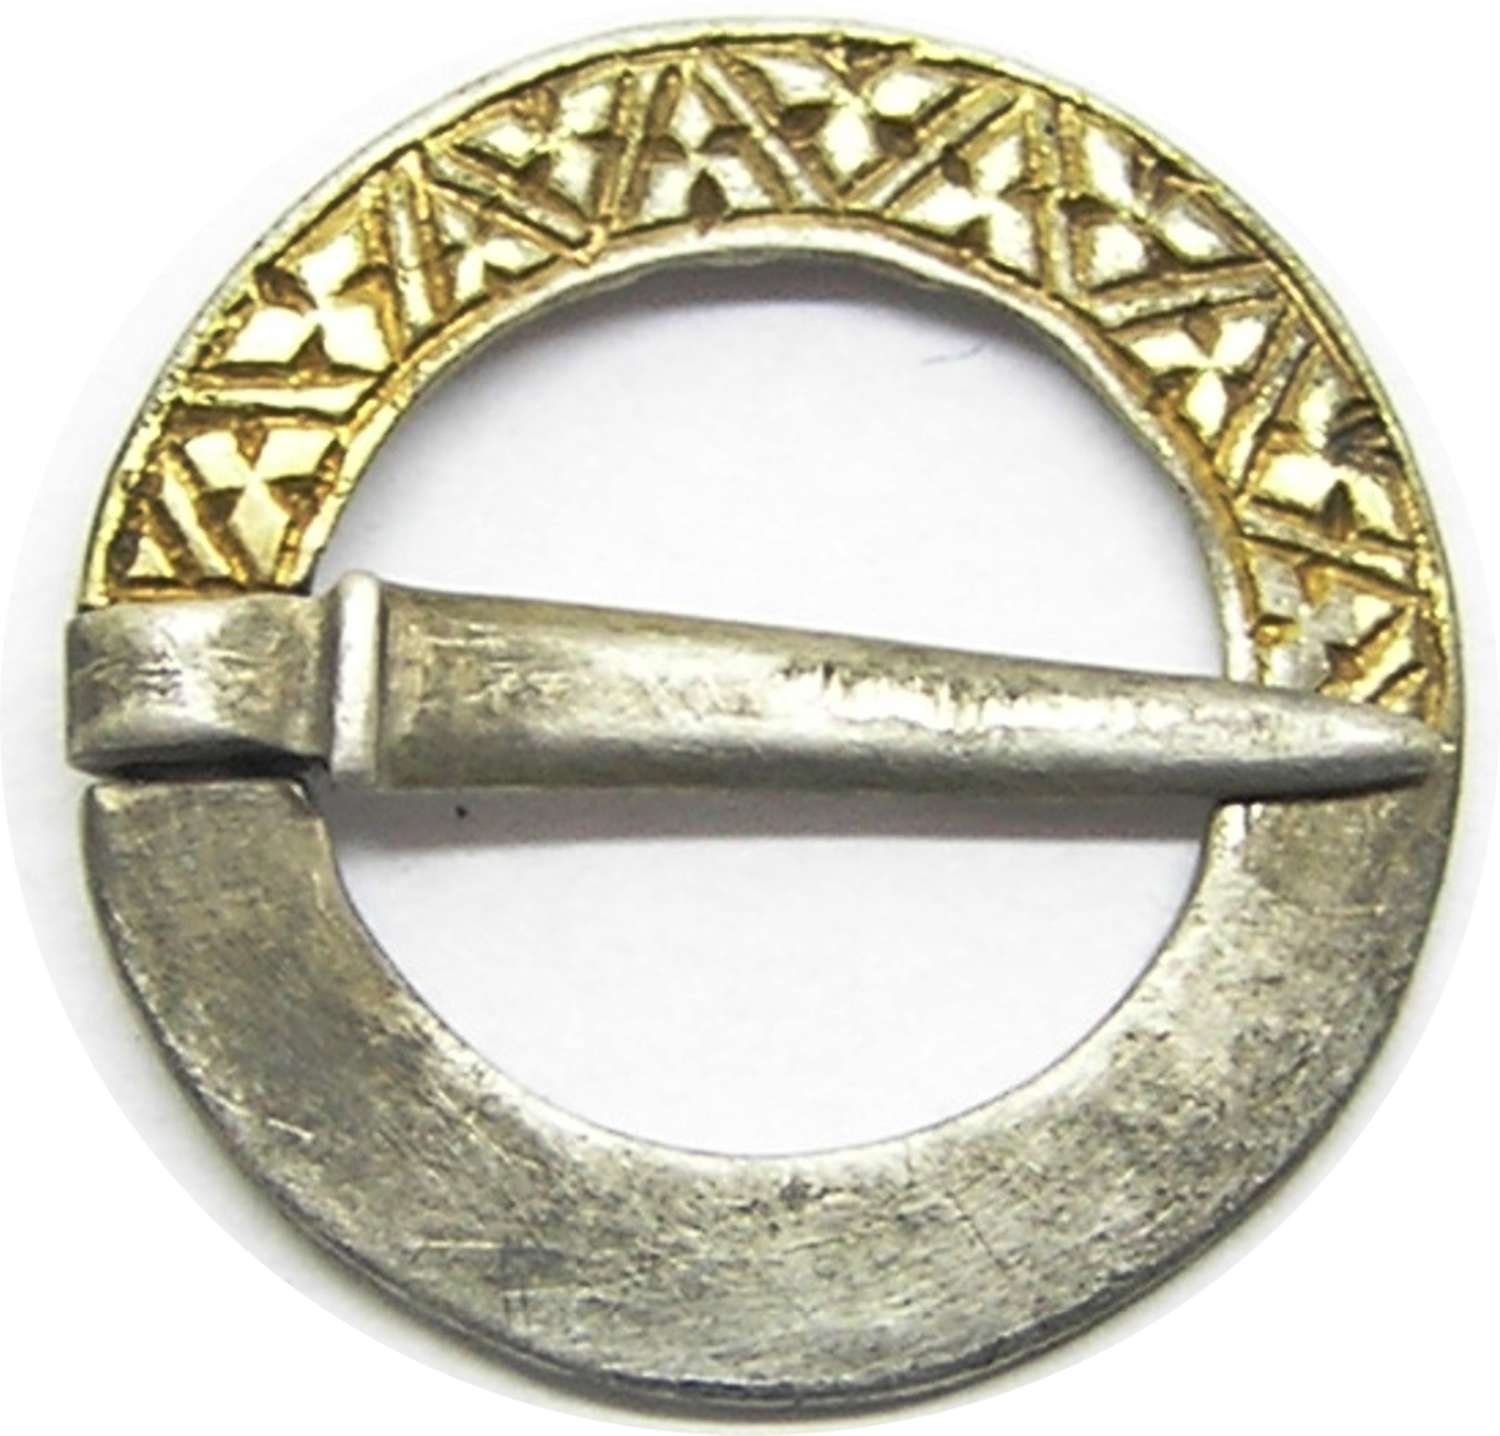 Medieval silver-gilt ring brooch